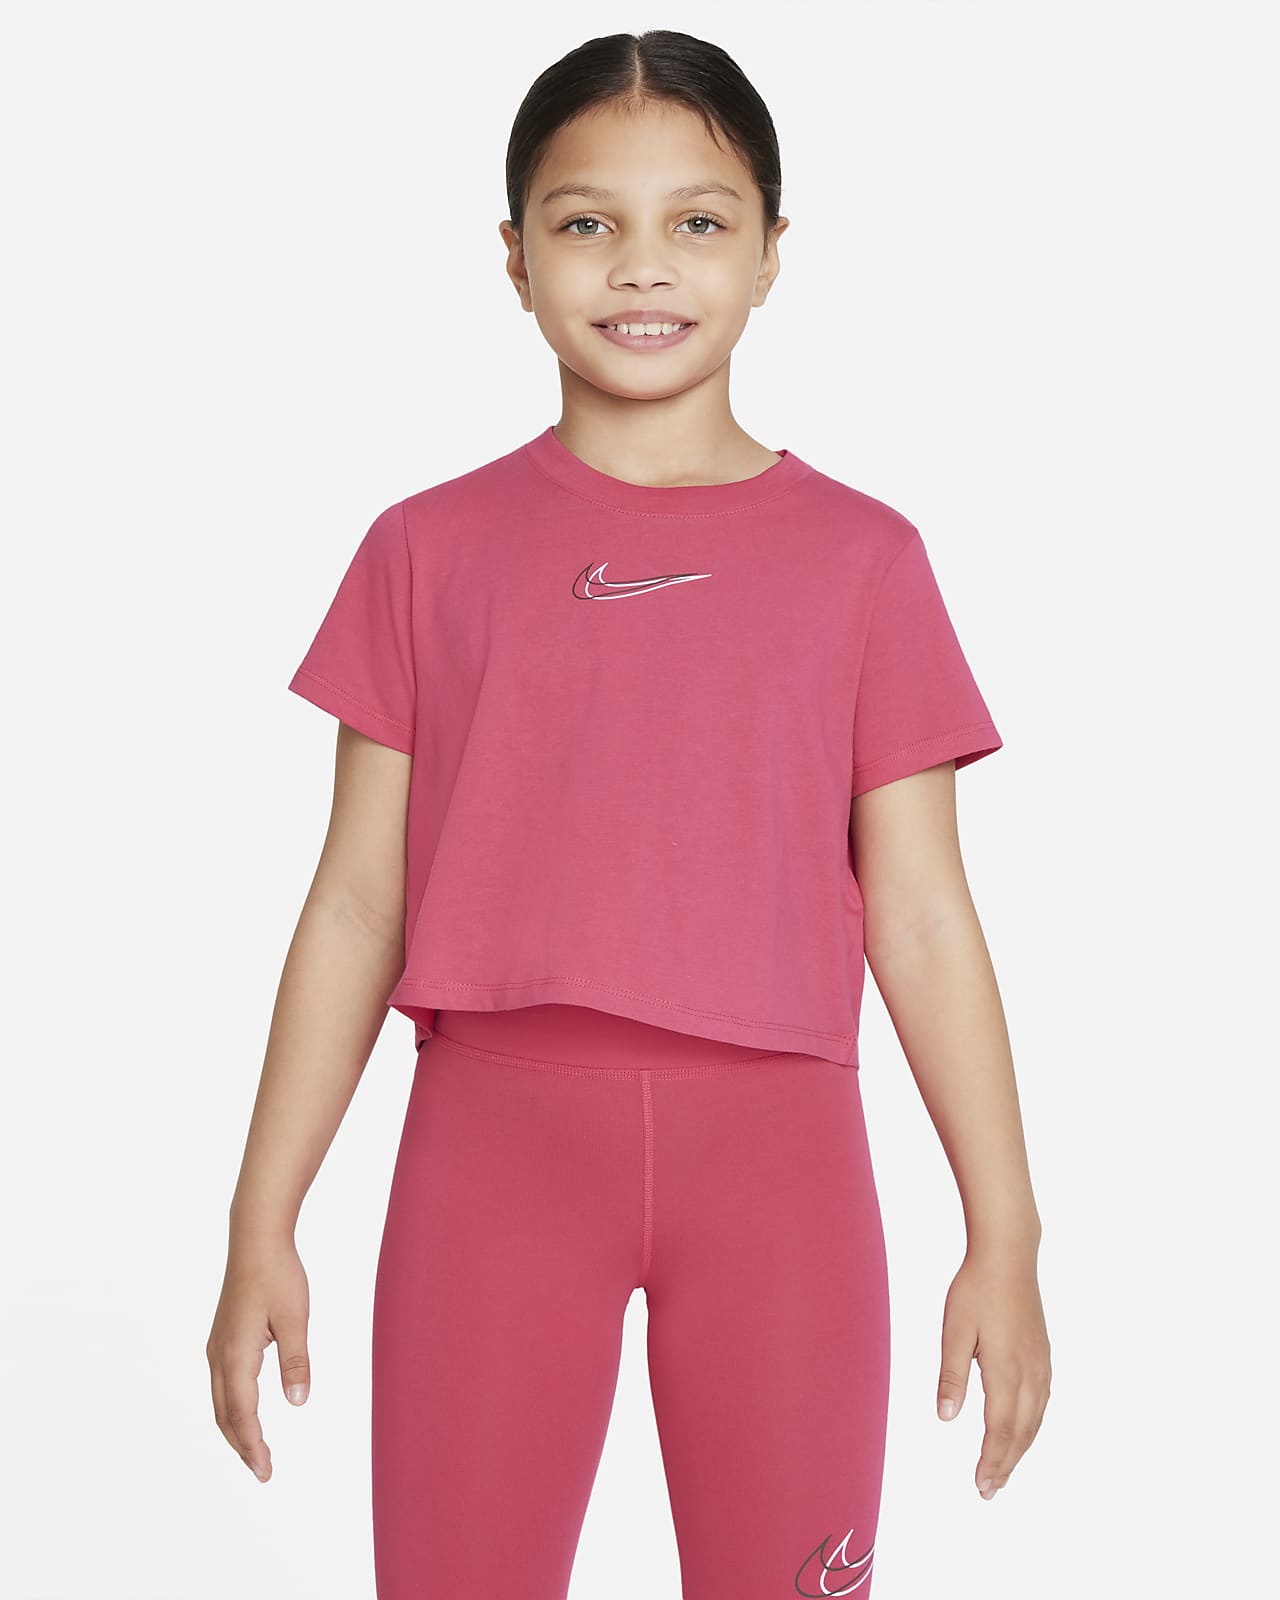 Nike Sportswear verkürztes Tanz-T-Shirt für ältere Kinder (Mädchen)